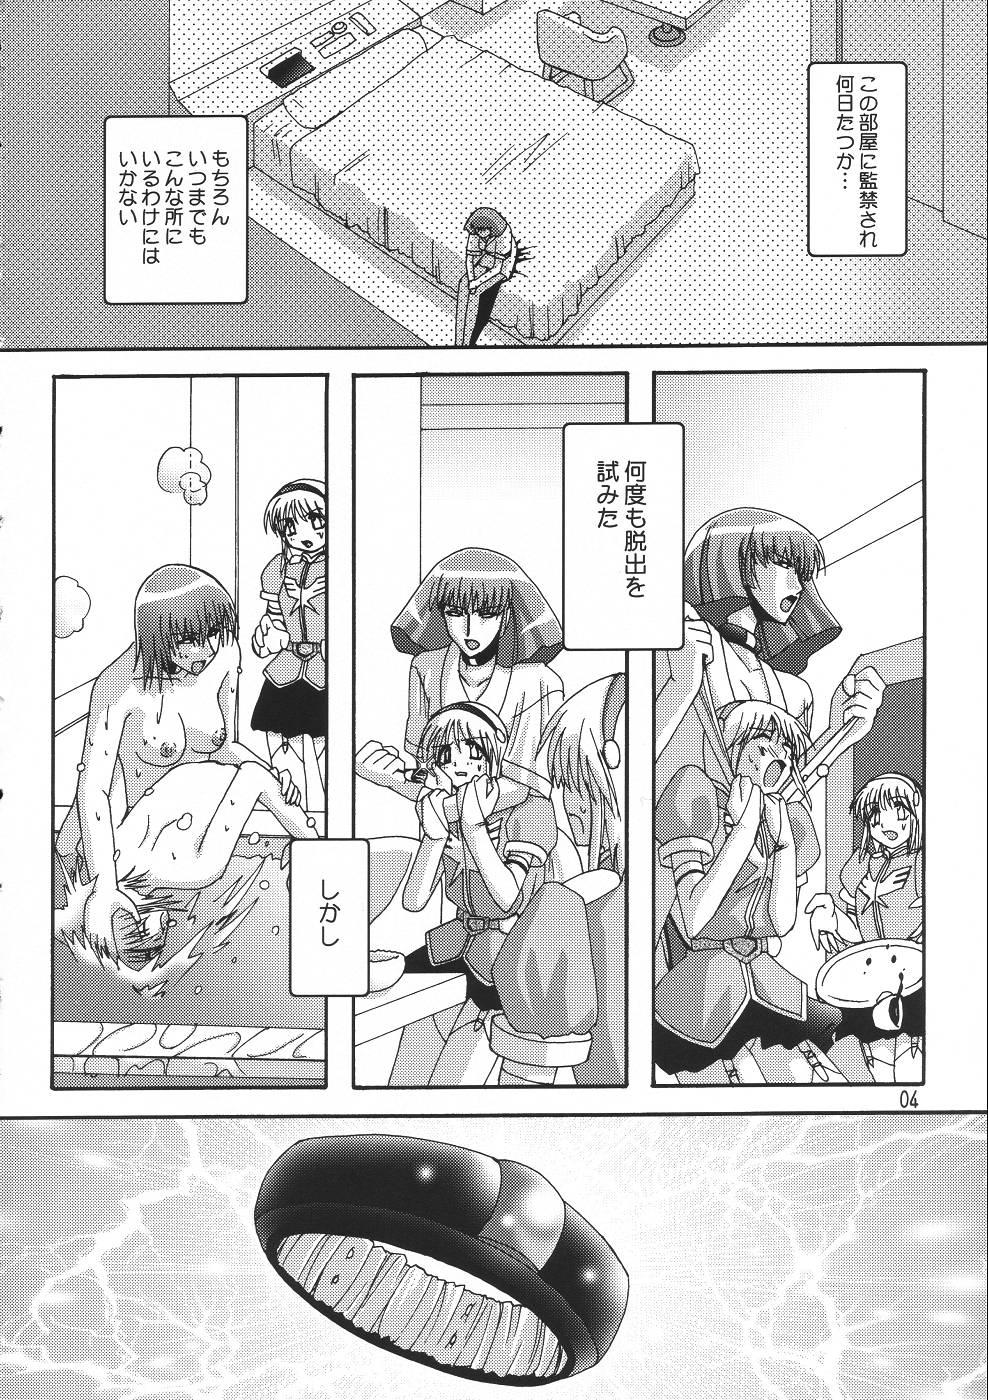 Foreskin Rho - Gundam zz Soloboy - Page 3